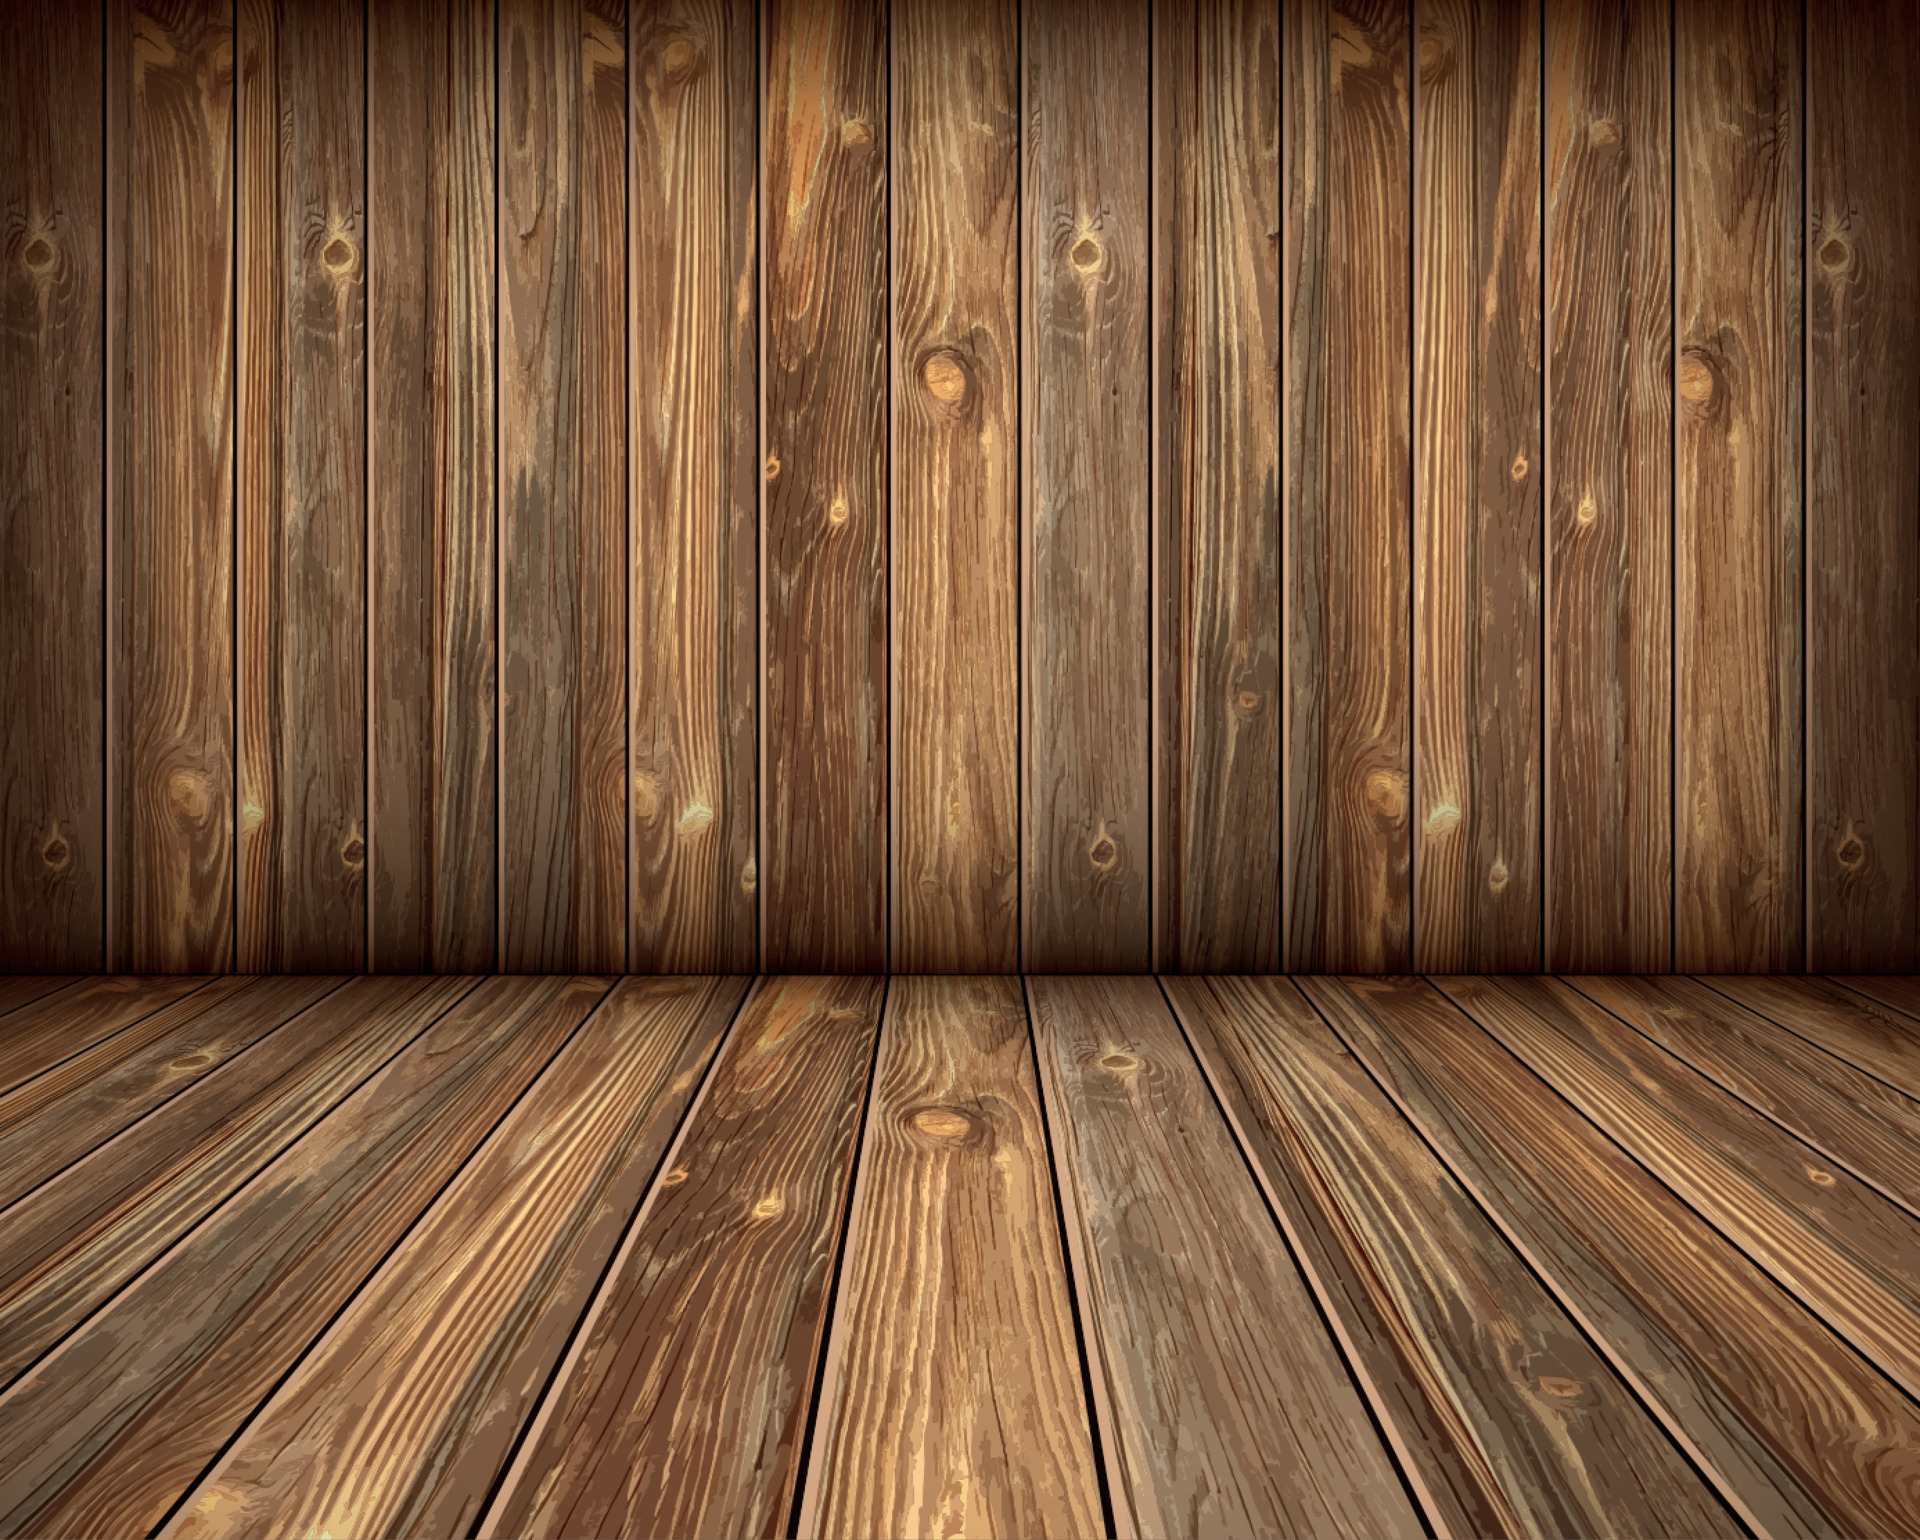 Vector nền tường gỗ sẽ giúp bạn tạo ra những sản phẩm đẹp mắt như thiết kế poster, backdrop sự kiện và nhiều hơn thế nữa. Khám phá ngay những kiểu dáng mới nhất với vector nền tường gỗ.